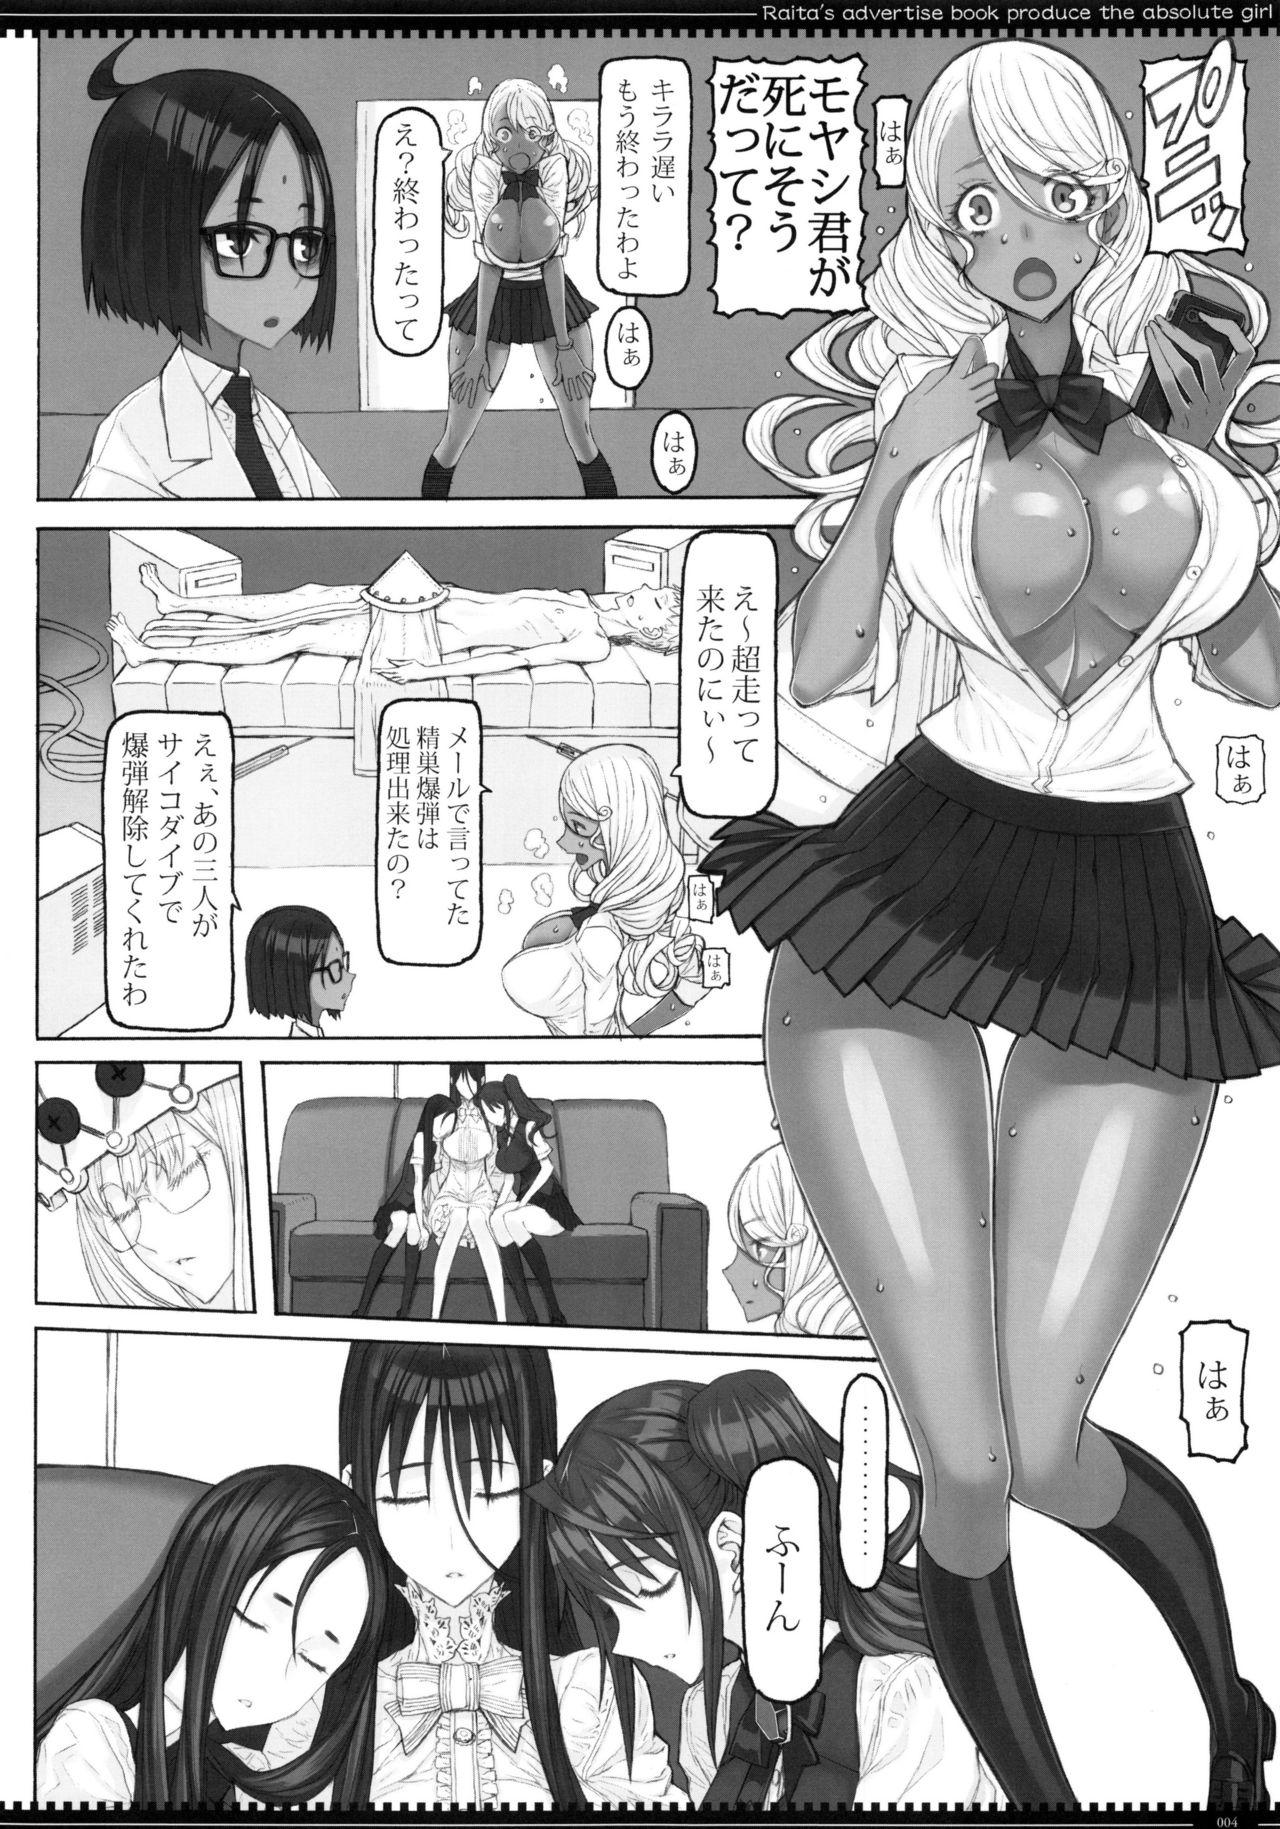 Sex Toys Mahou Shoujo 19.0 - Zettai junpaku mahou shoujo Pendeja - Page 3